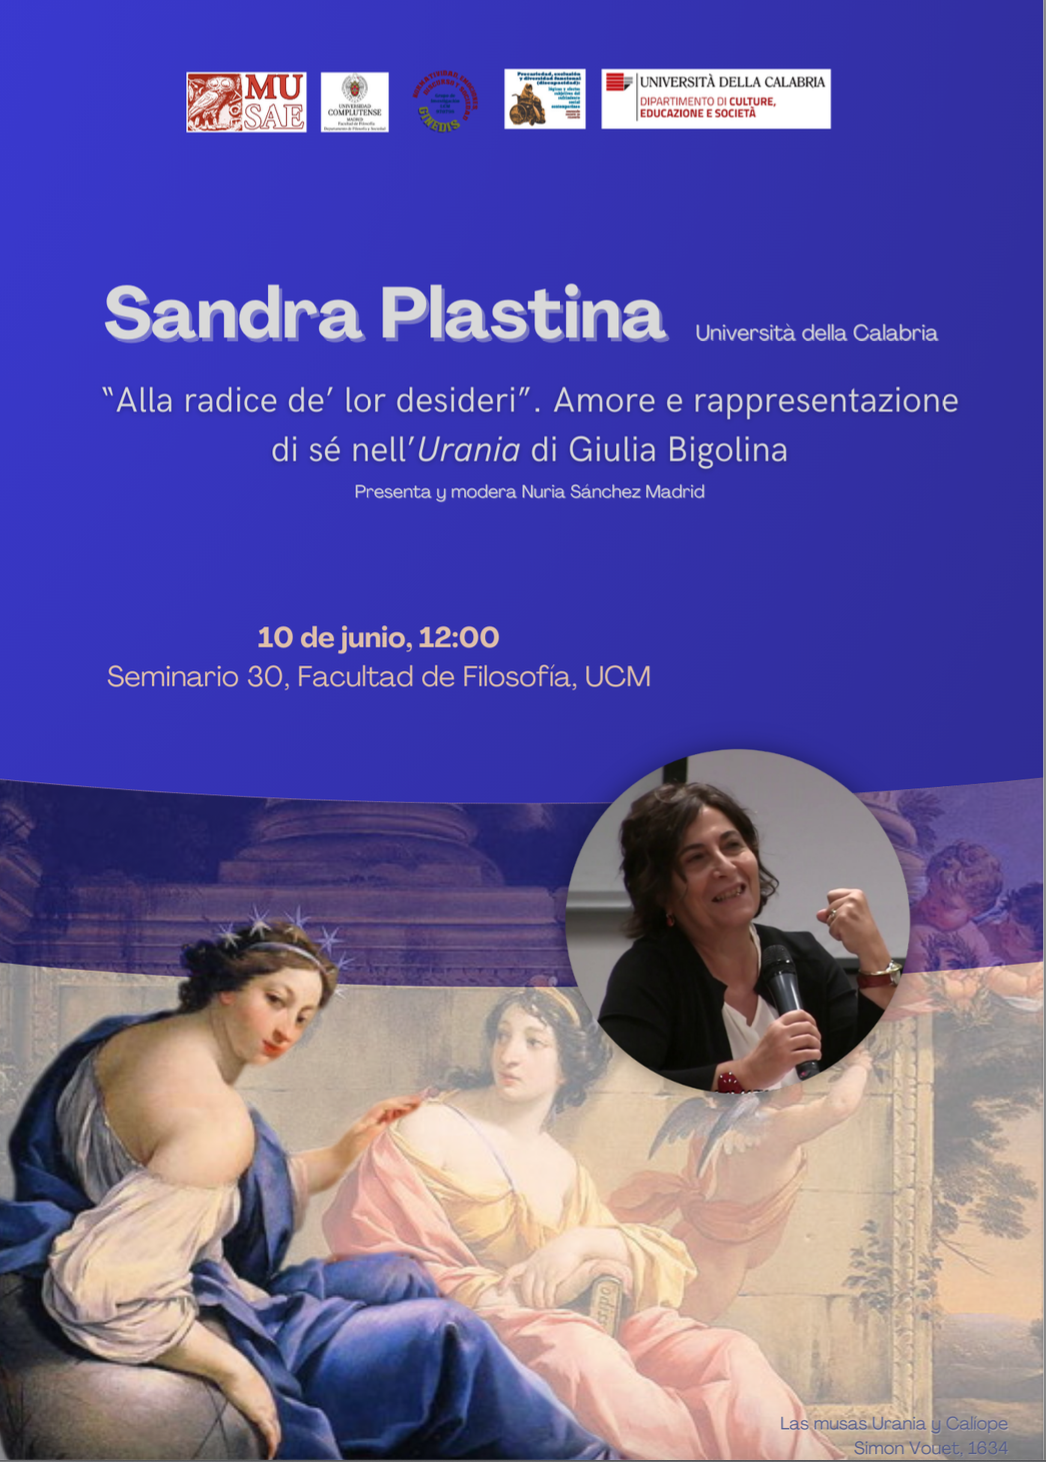 Conferencia / Sandra Plastina (Univ. de Calabria): "Alla radice de' lor desideri". Amore e rappresentazione di sé nell'"Urania" di Giulia Bigolina 